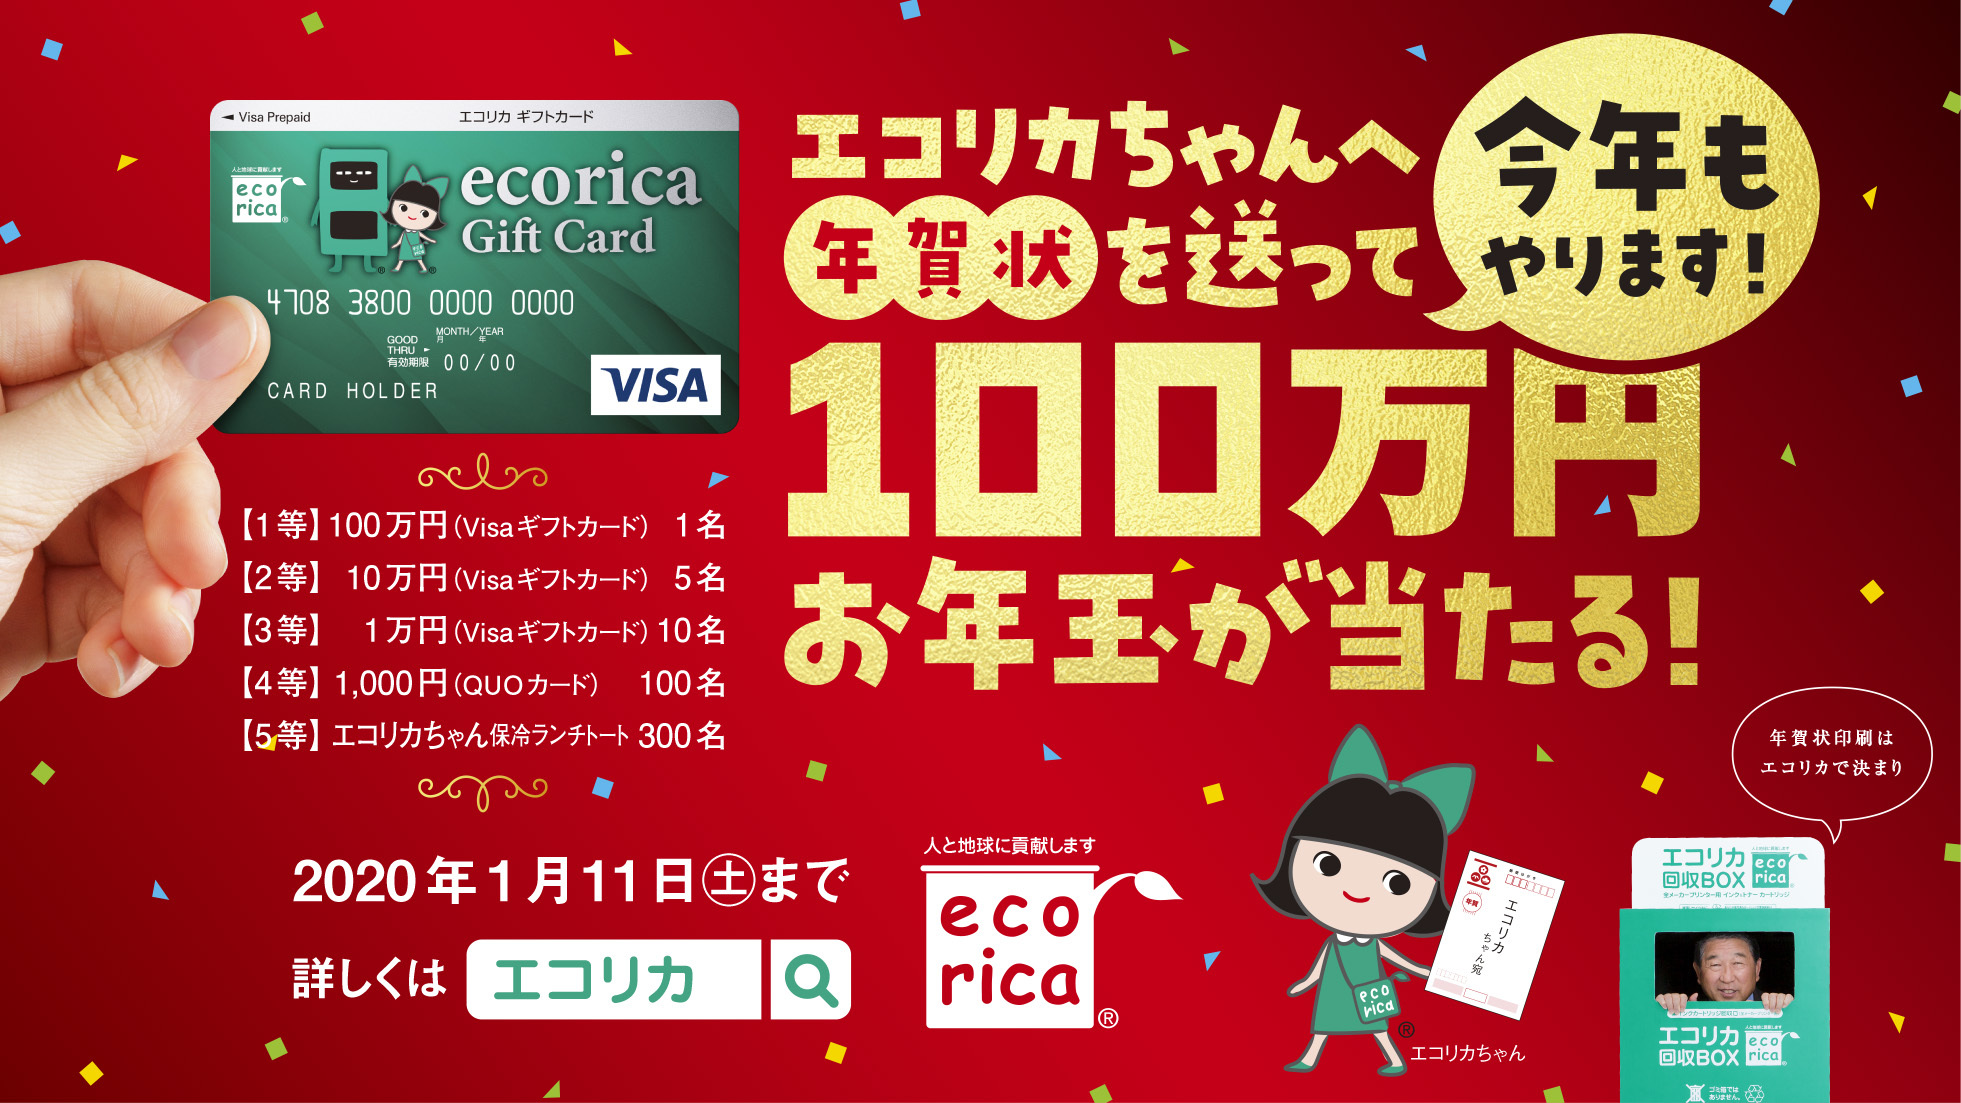 今年もやります エコリカちゃんへ年賀状を送って100万円お年玉が当たる キャンペーン実施中 株式会社エコリカのプレスリリース